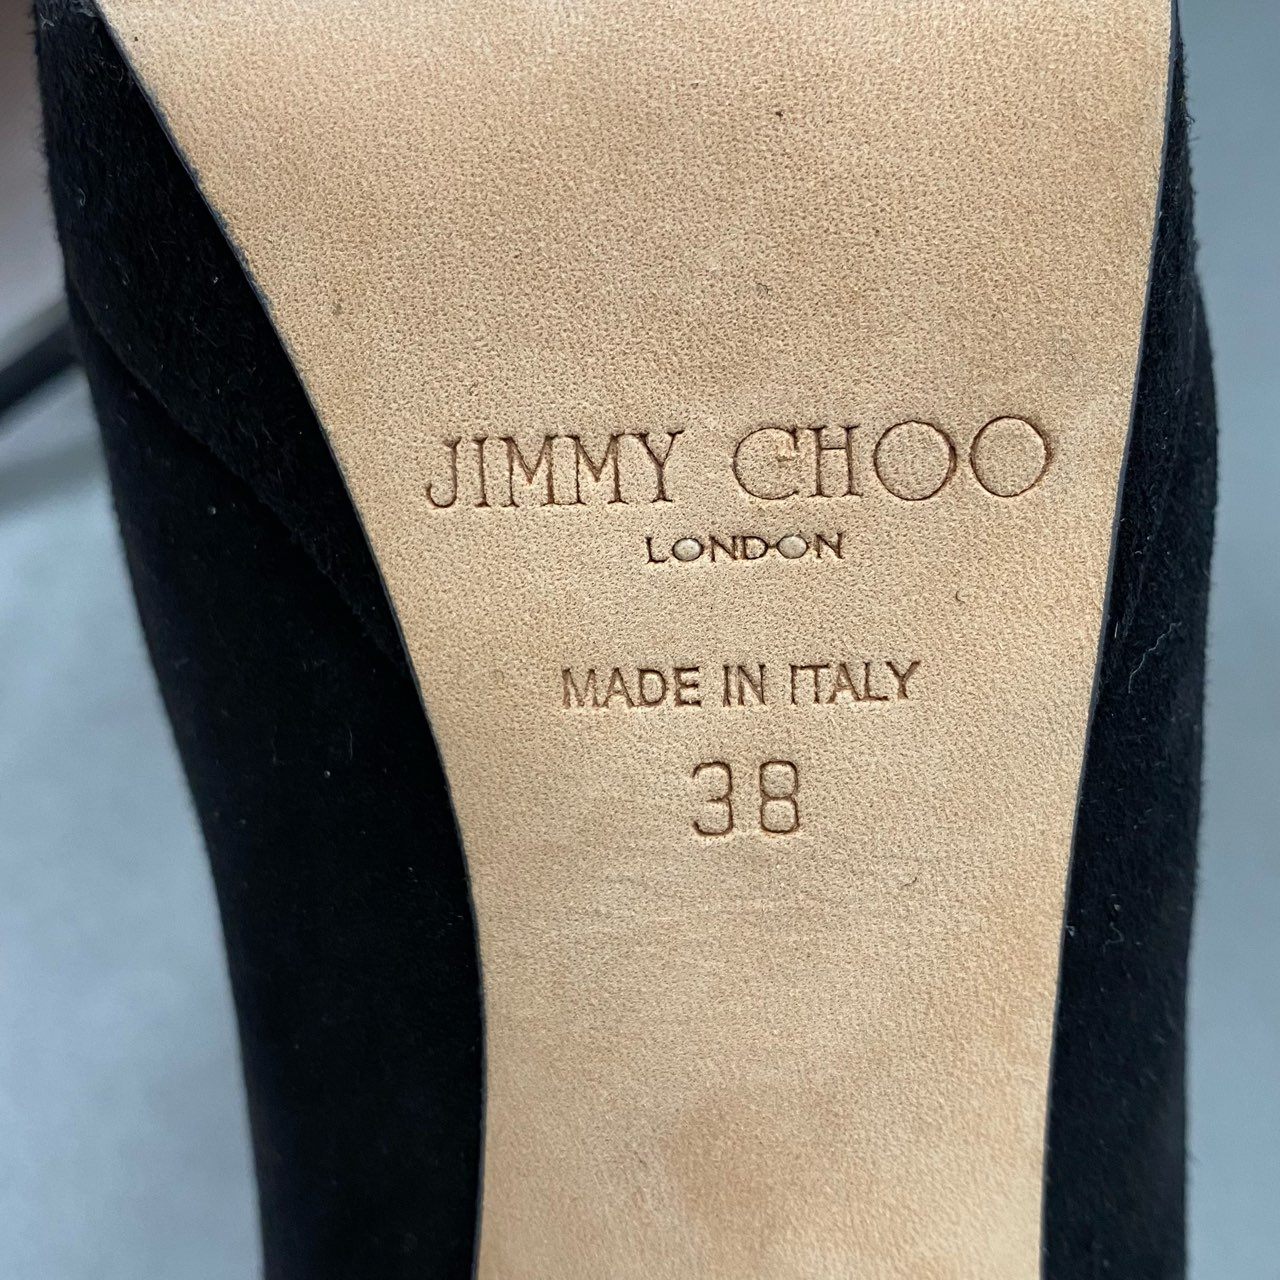 4c8-2 JIMMY CHOO ジミーチュウ イタリア製 ハイヒール パンプス シューズ 38 ブラック スエード レザー MADE IN ITALY